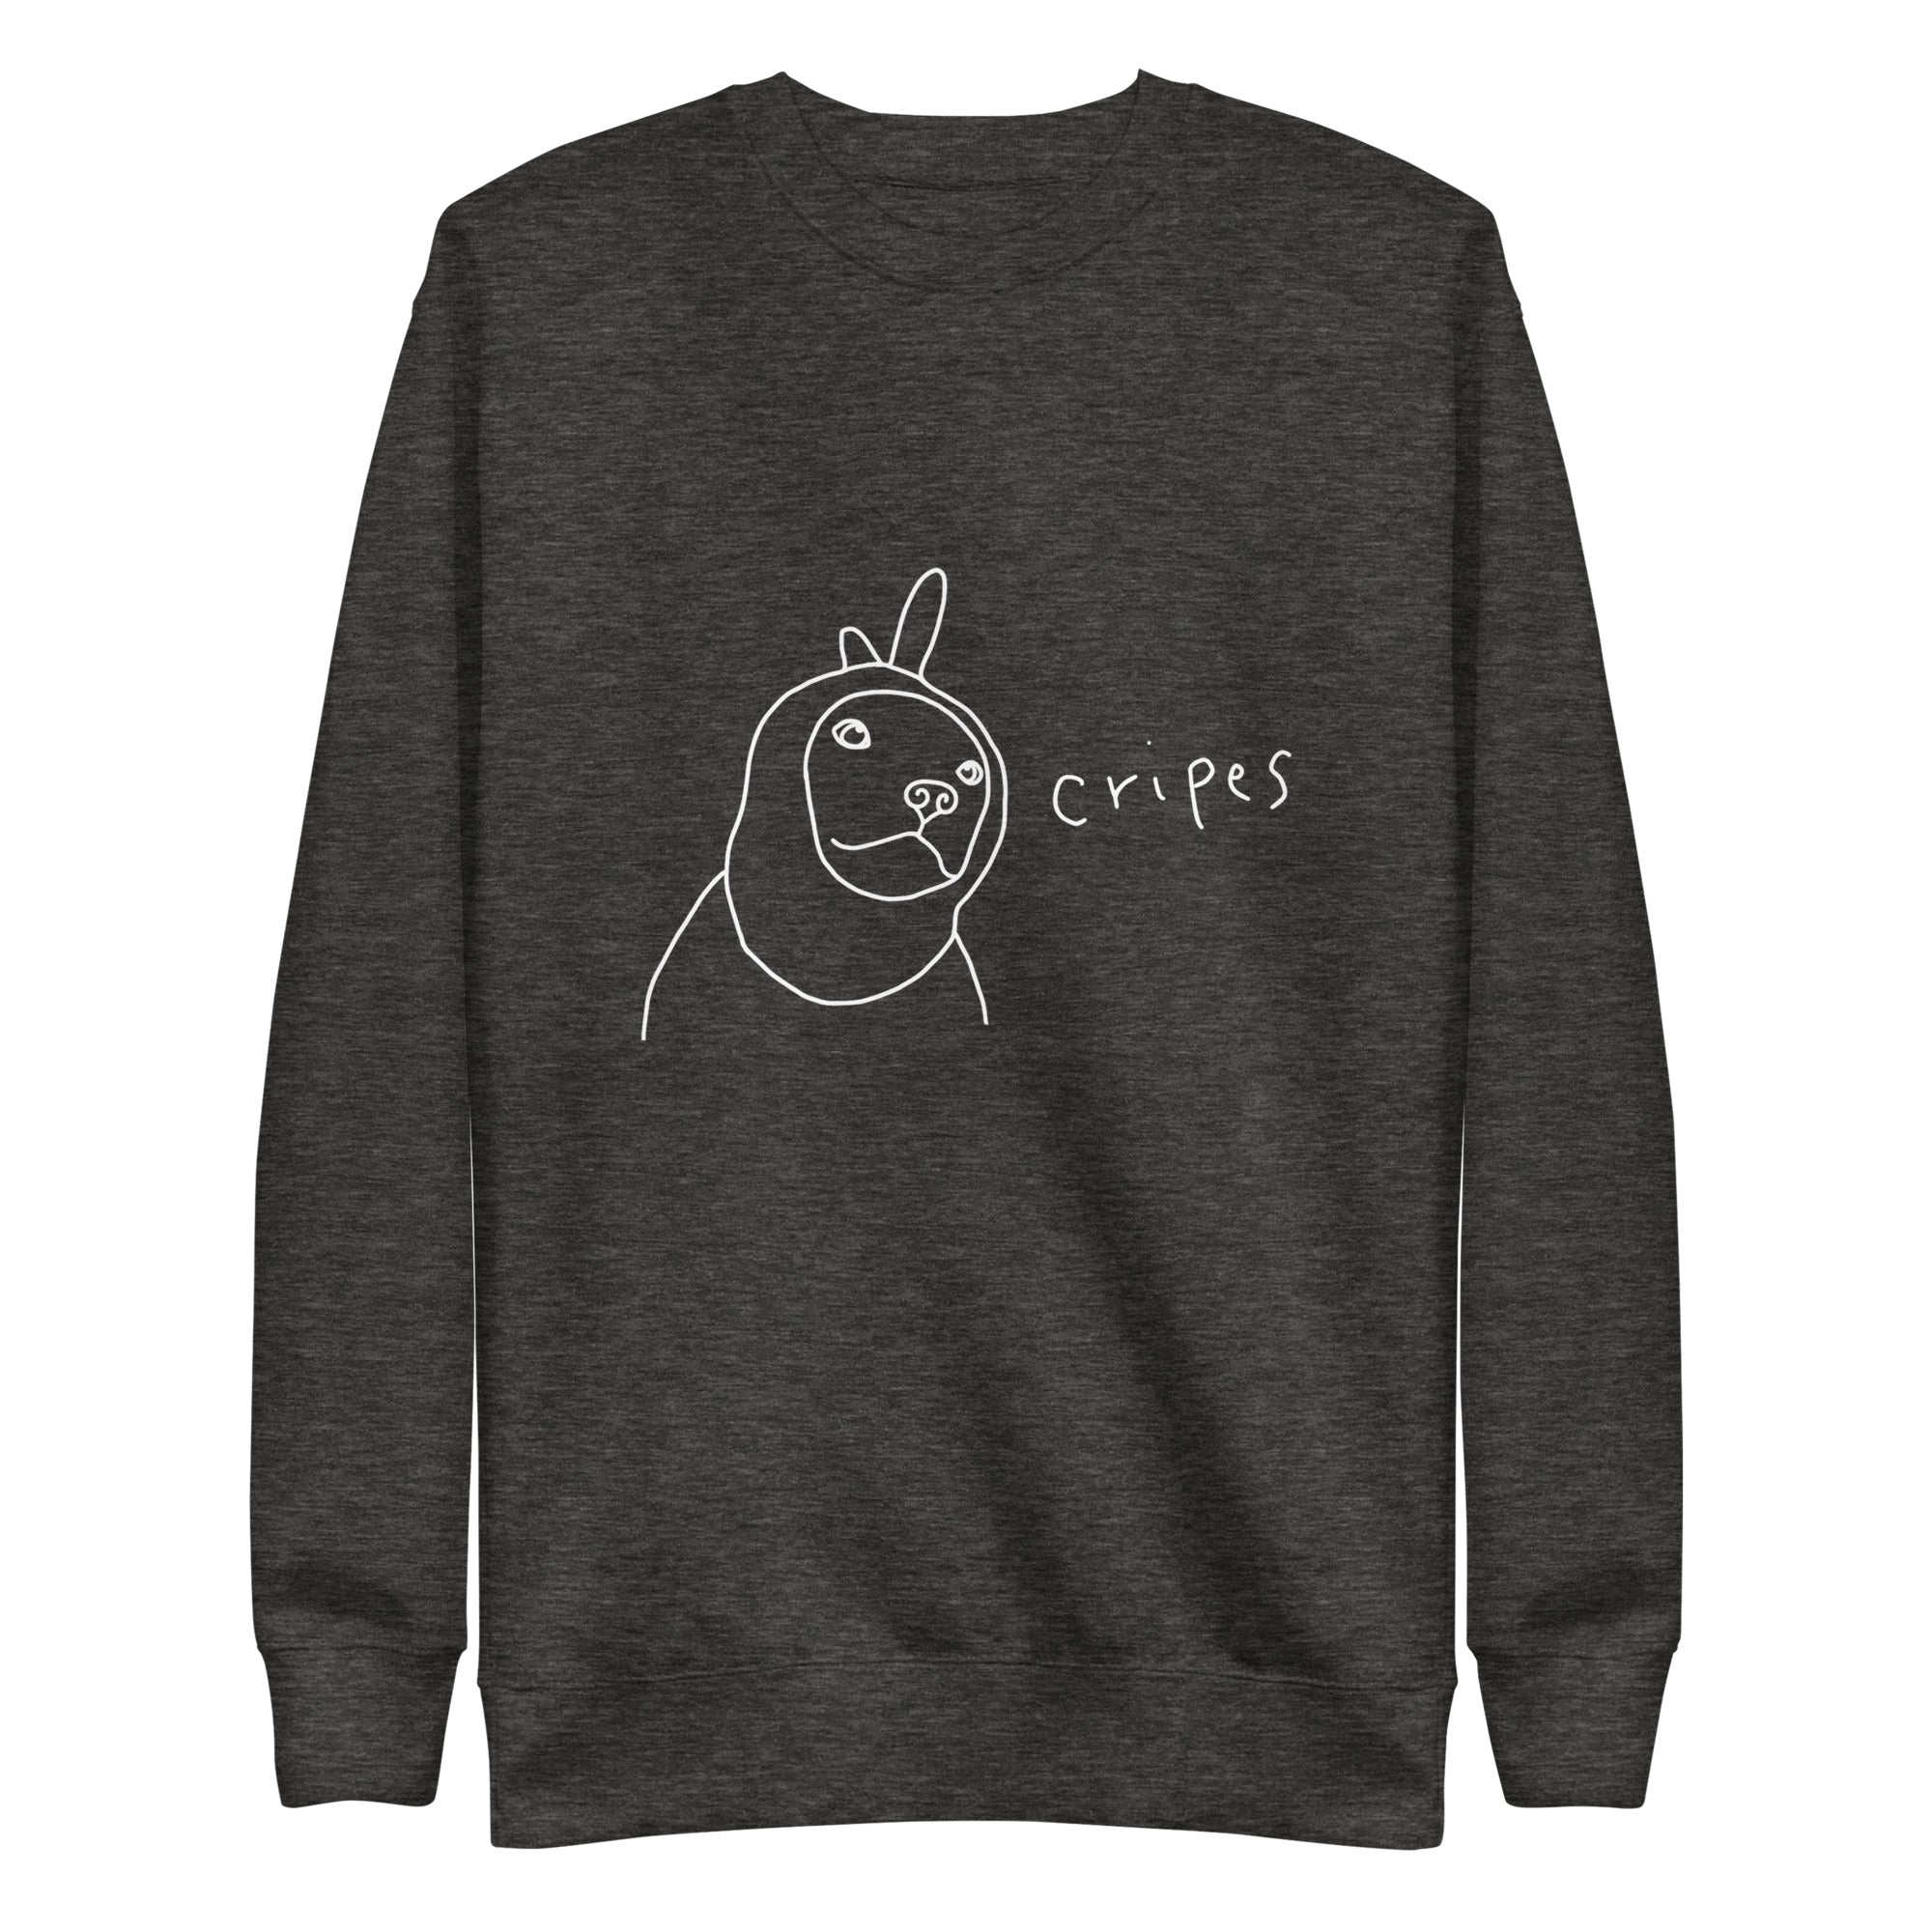 "Cripes" Adult Unisex Premium Sweatshirt